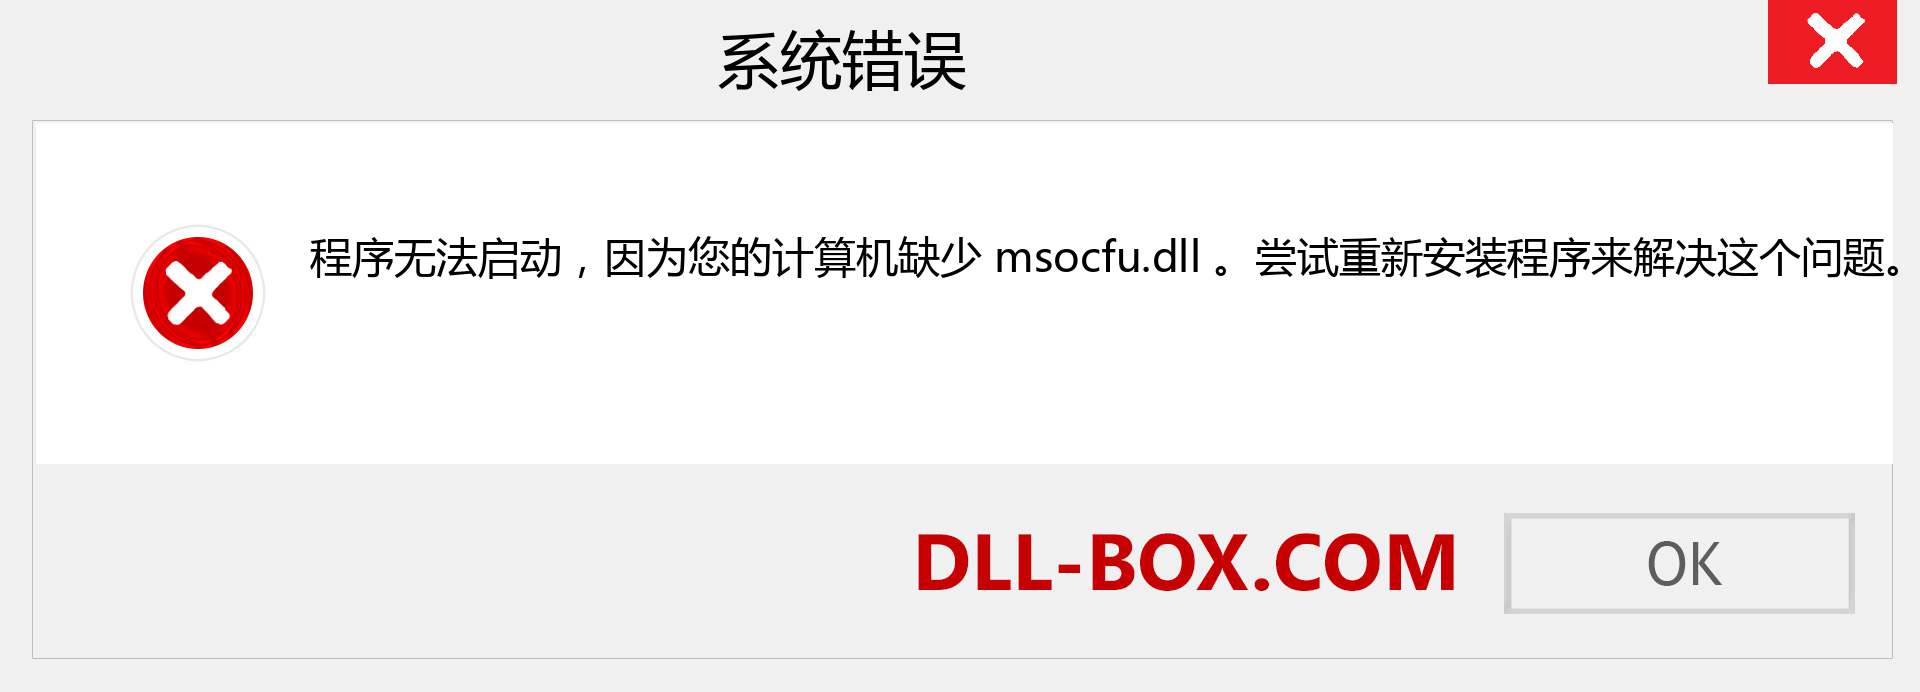 msocfu.dll 文件丢失？。 适用于 Windows 7、8、10 的下载 - 修复 Windows、照片、图像上的 msocfu dll 丢失错误